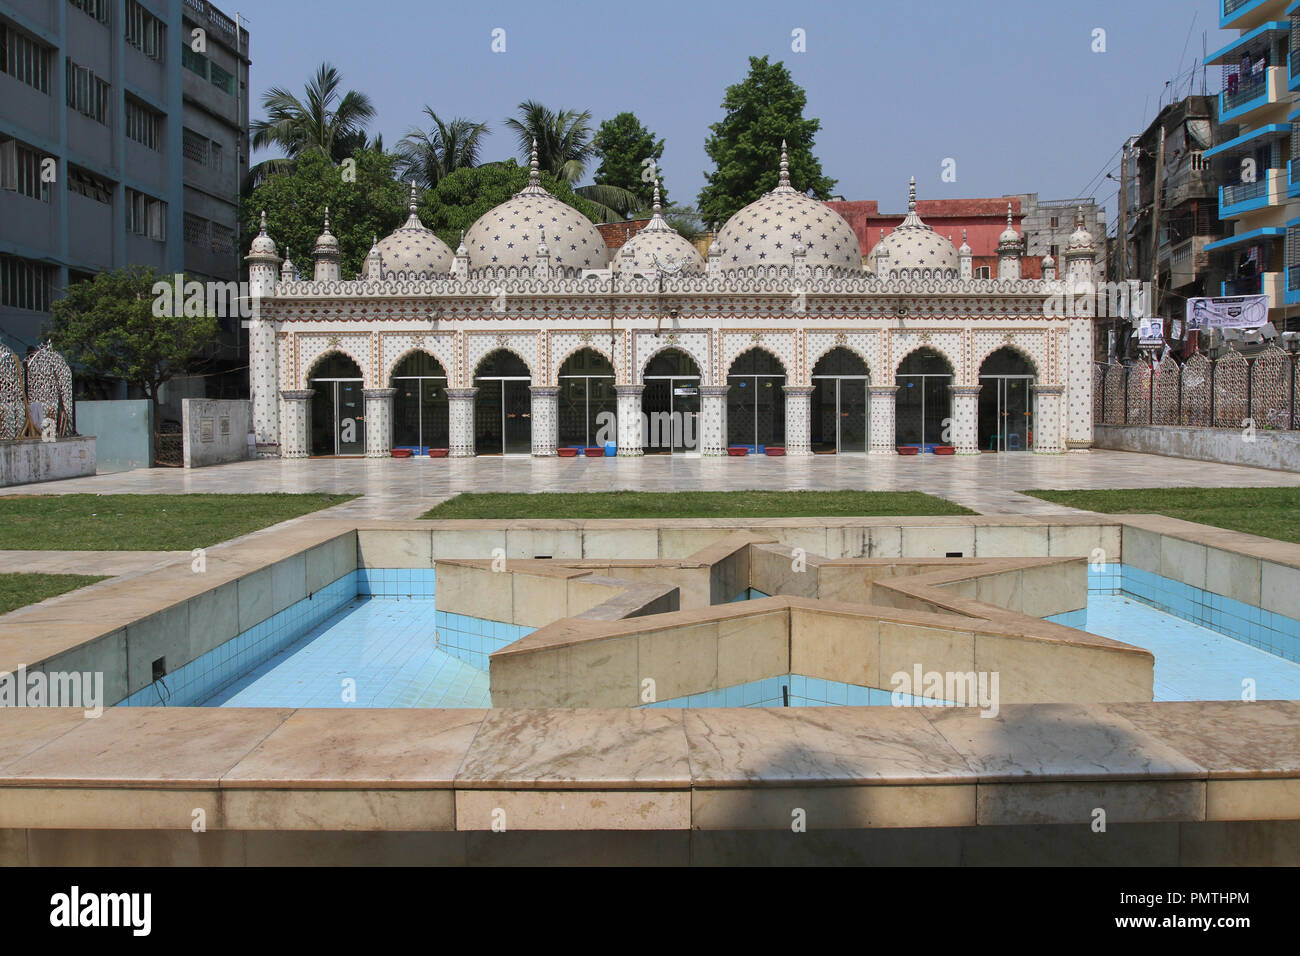 Dacca in Bangladesh - Aprile 18, 2015: Moschea Star (Tara Masjid), è una moschea a Armanitola a Dhaka, nel Bangladesh. La moschea ha ornato progetta ed è de Foto Stock